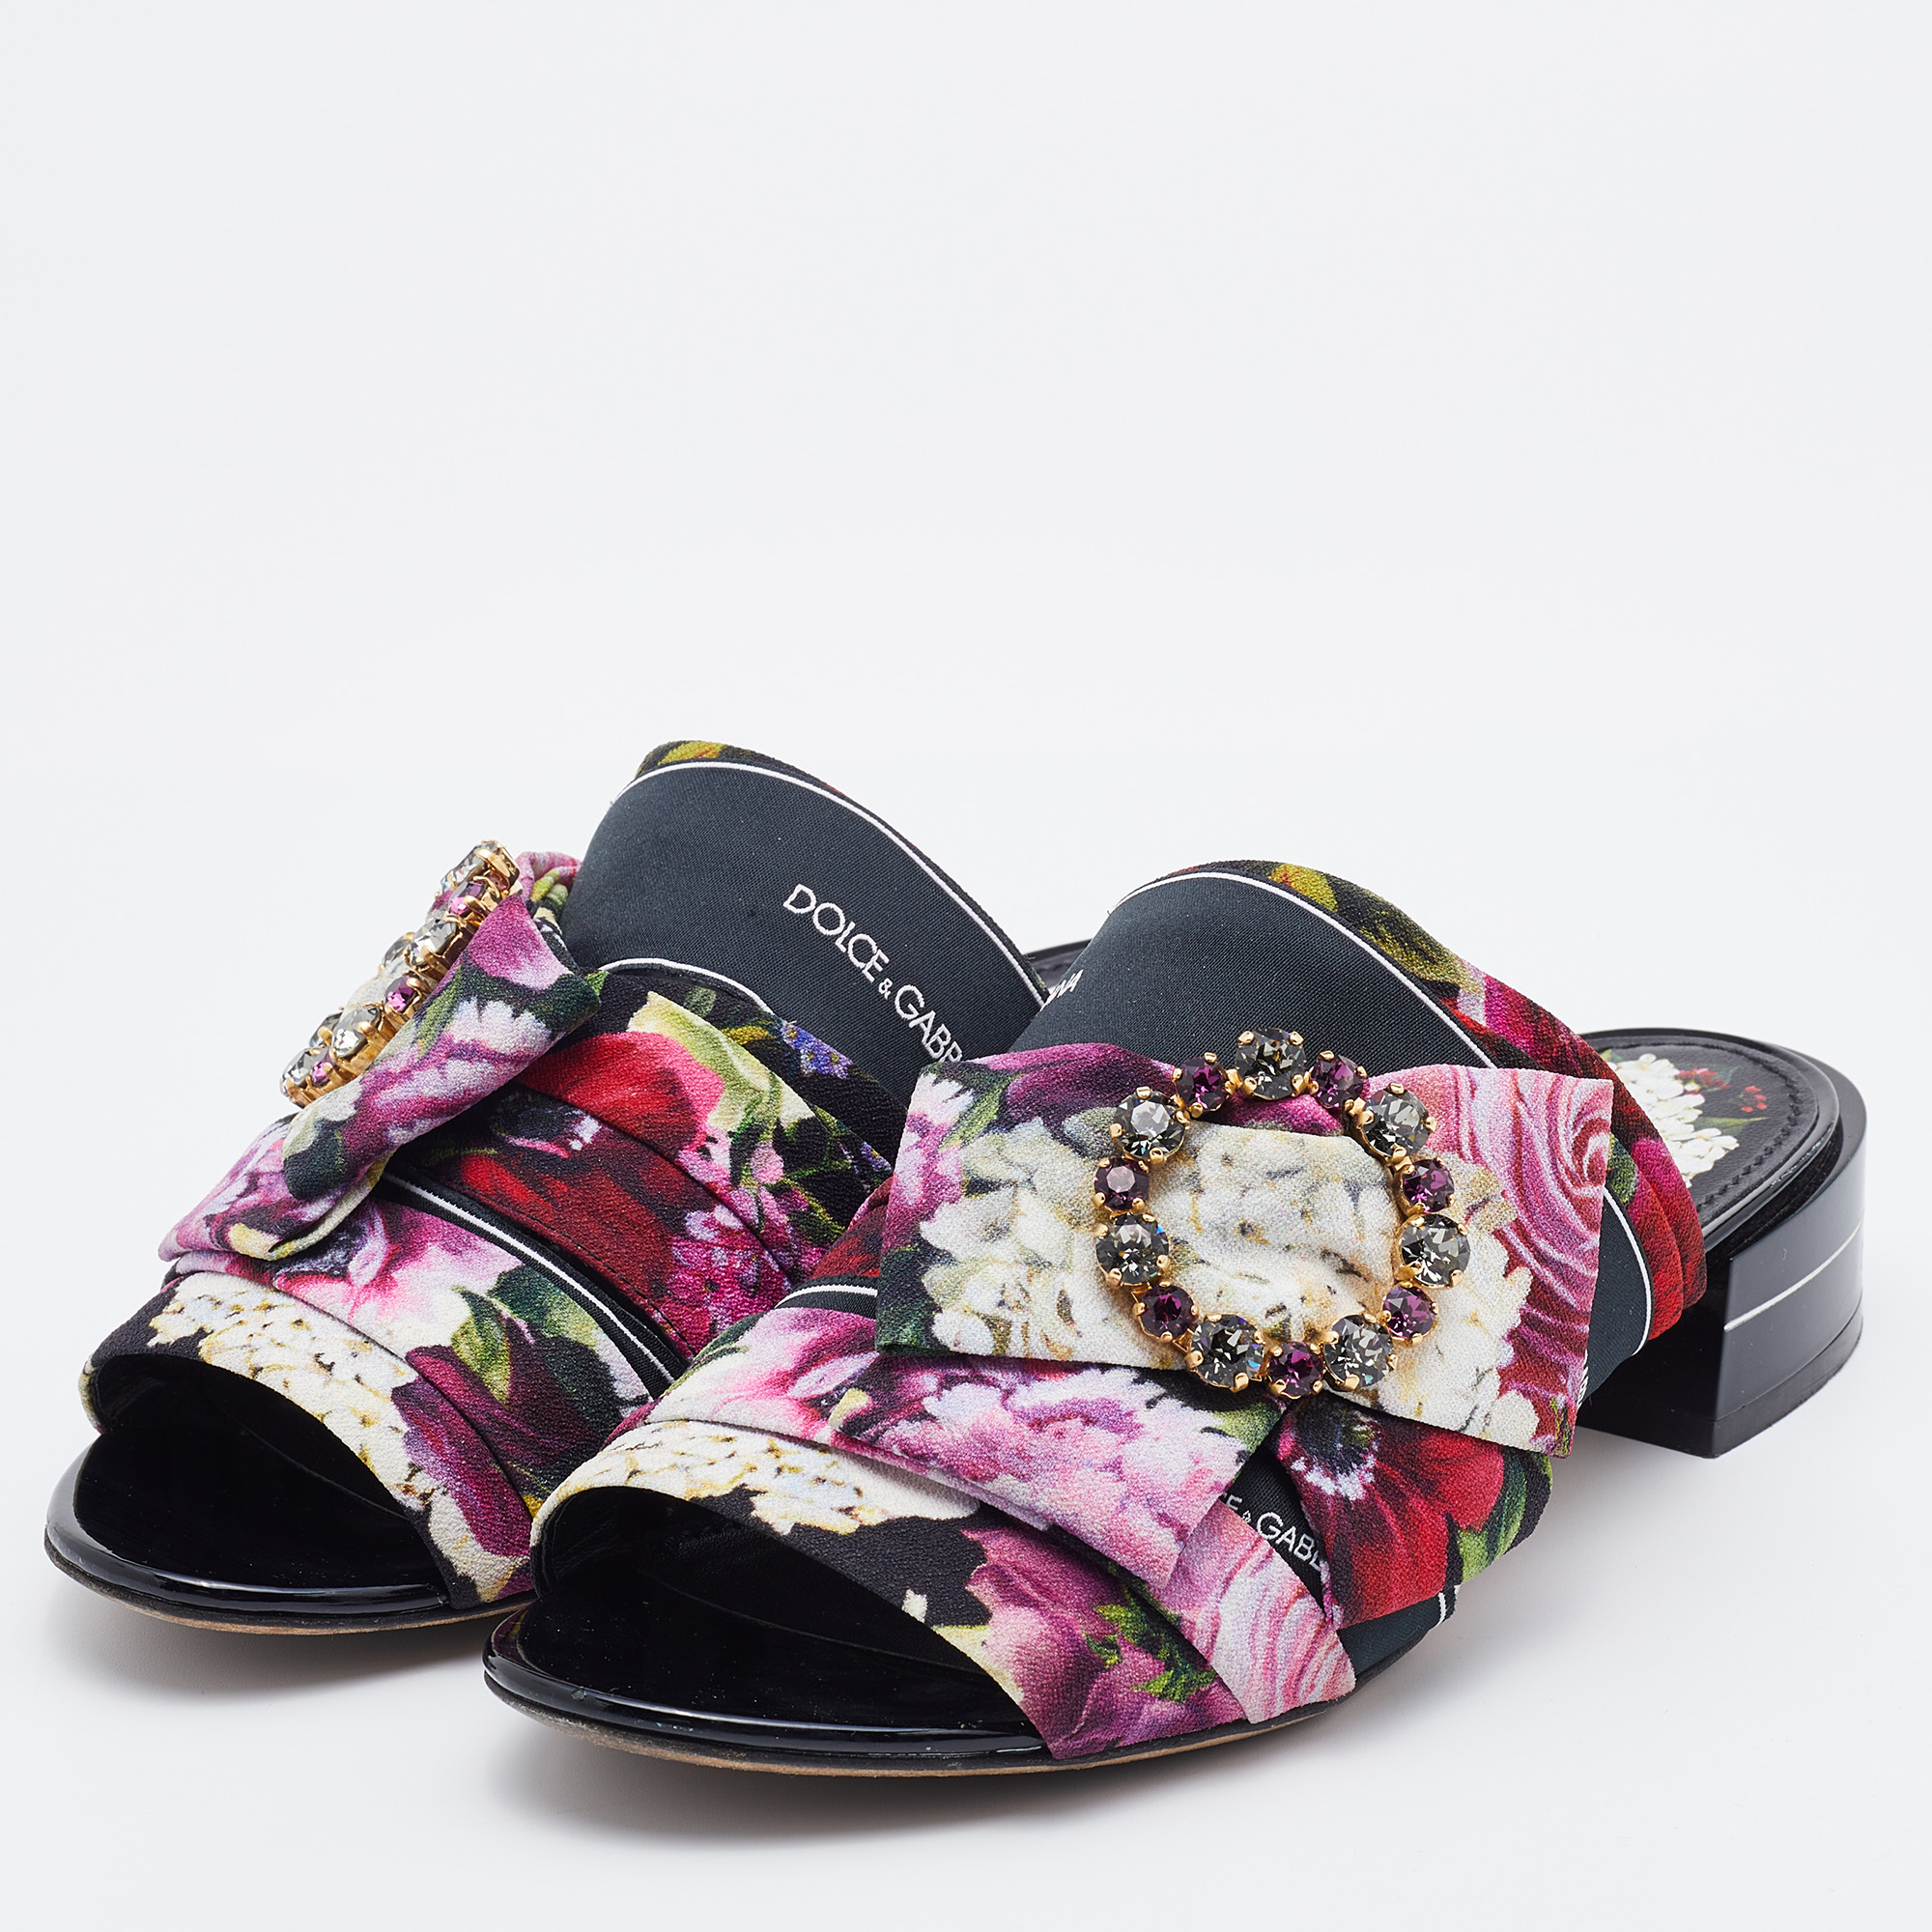 

Dolce & Gabbana Multicolor Floral Print Fabric Embellished Slide Sandals Size